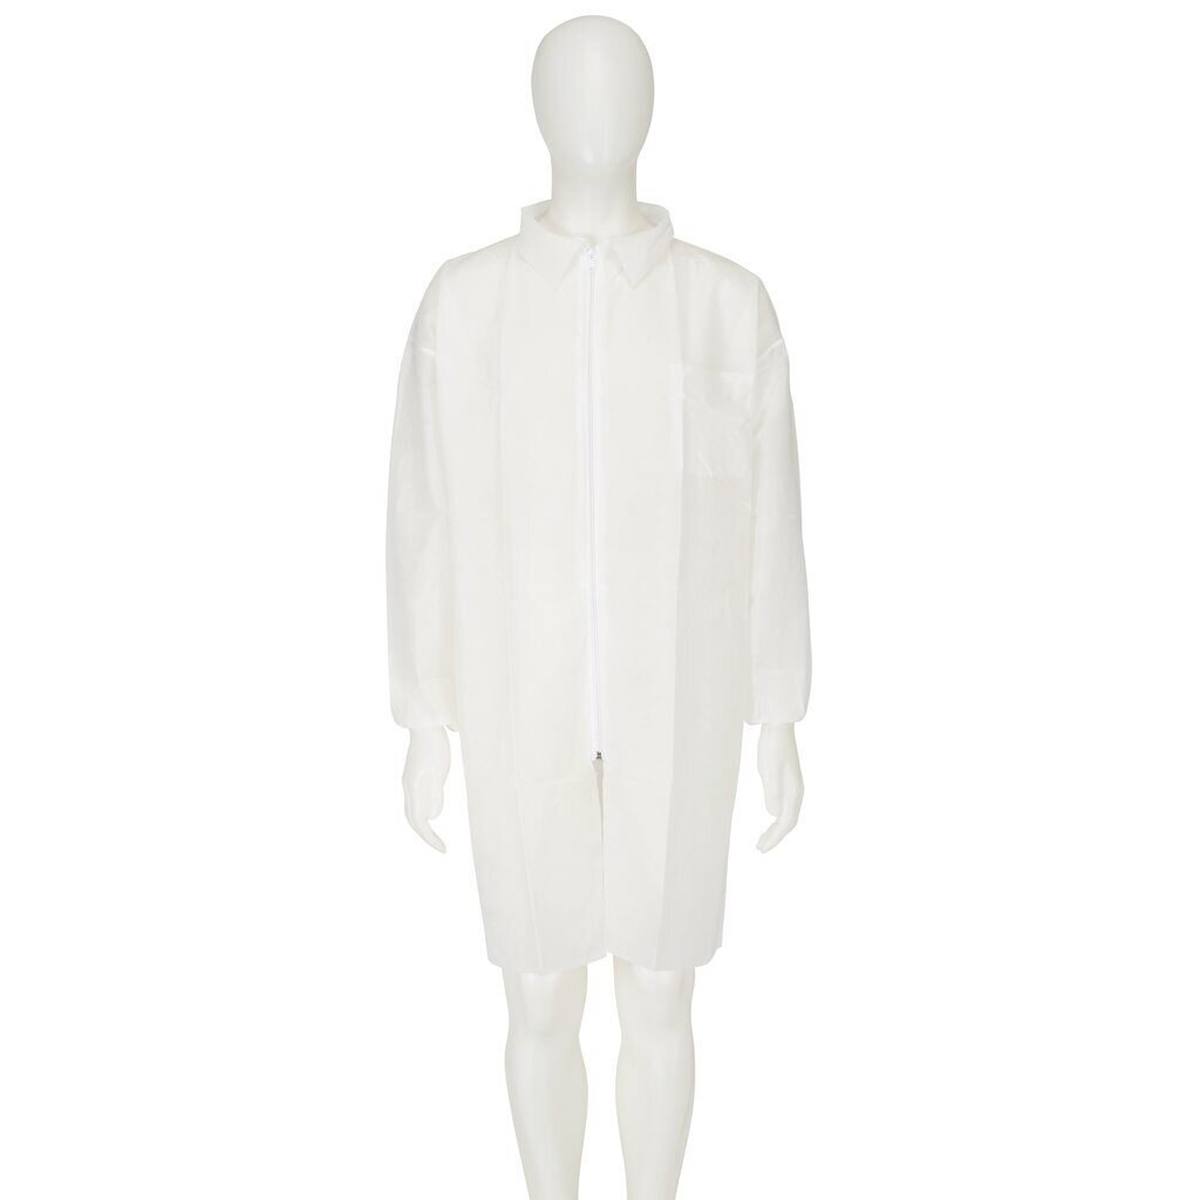 3M 4400 Manteau, blanc, taille 2XL, matériel 100% polypropylène, respirant, très léger, avec fermeture éclair